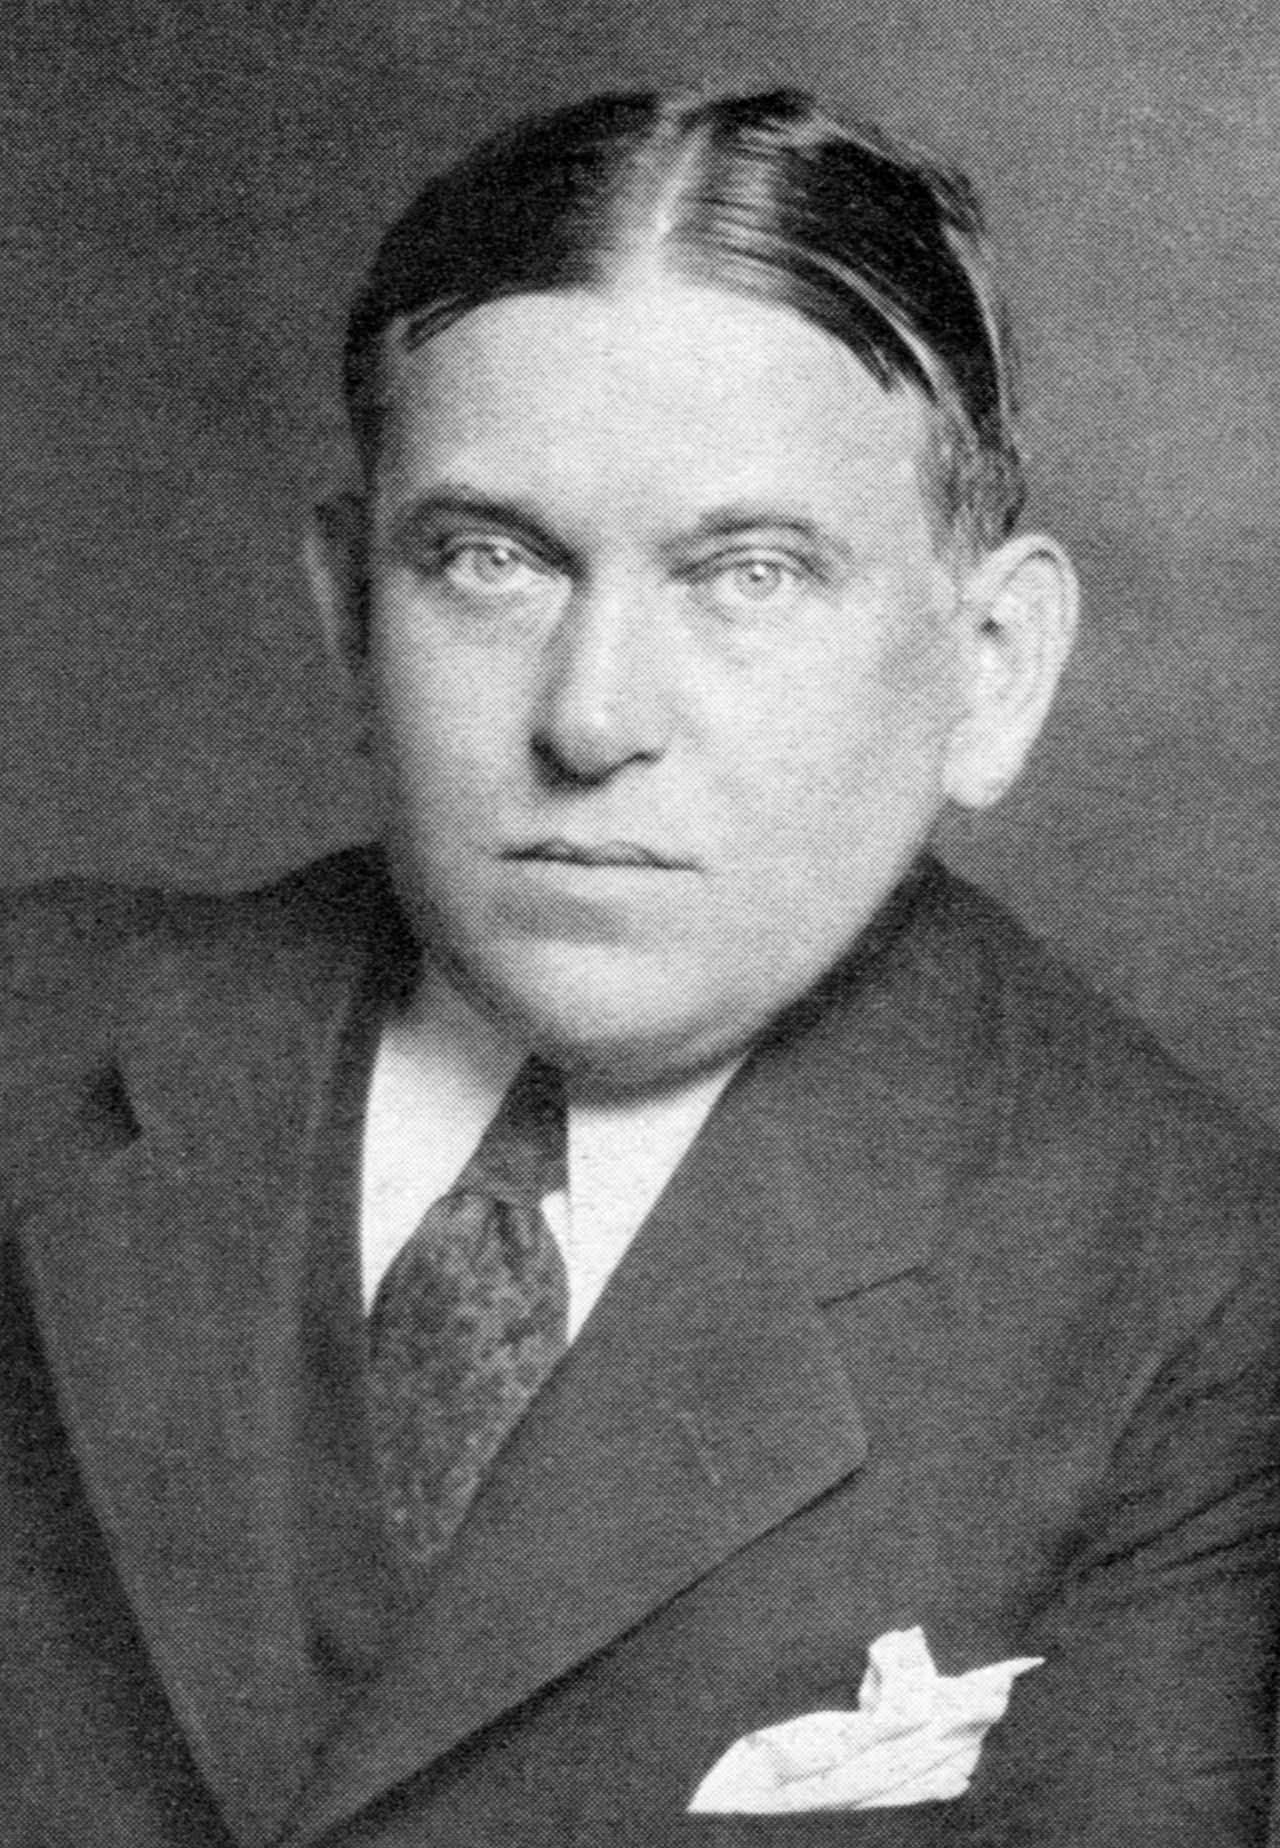 H. L. Menchen